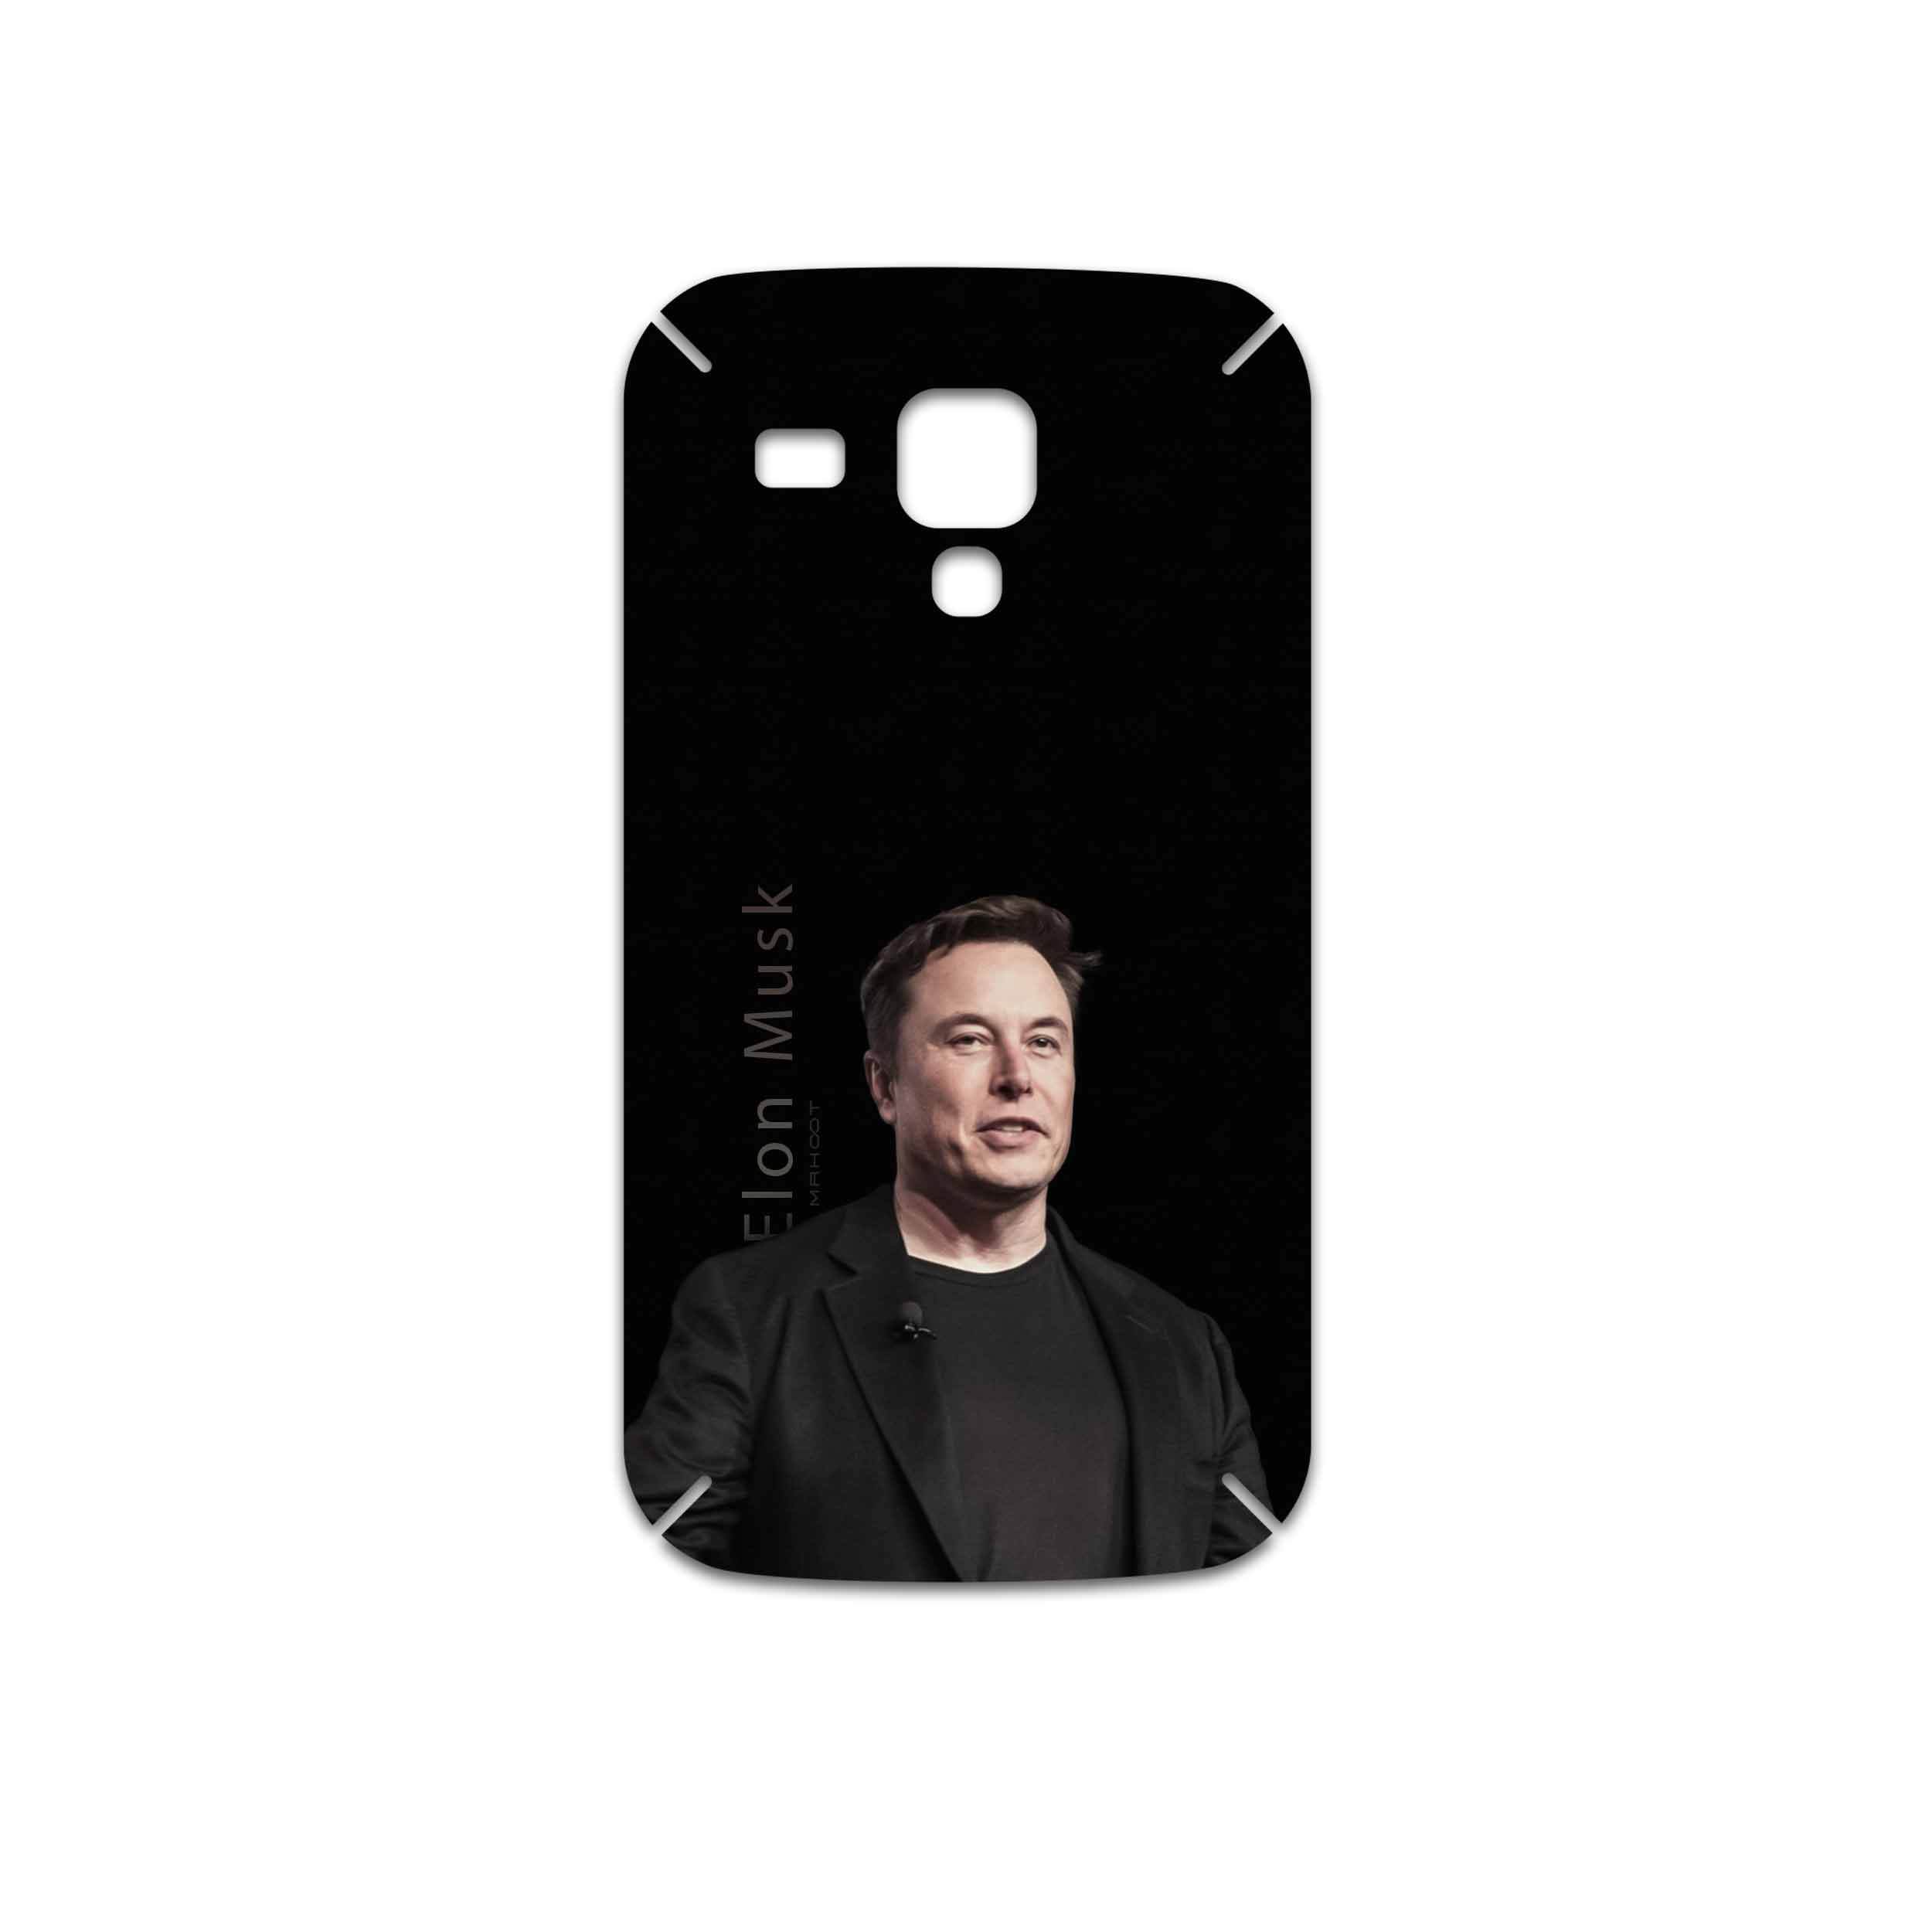 برچسب پوششی ماهوت مدل Elon Musk مناسب برای گوشی موبایل سامسونگ Galaxy S Duos GT S7562